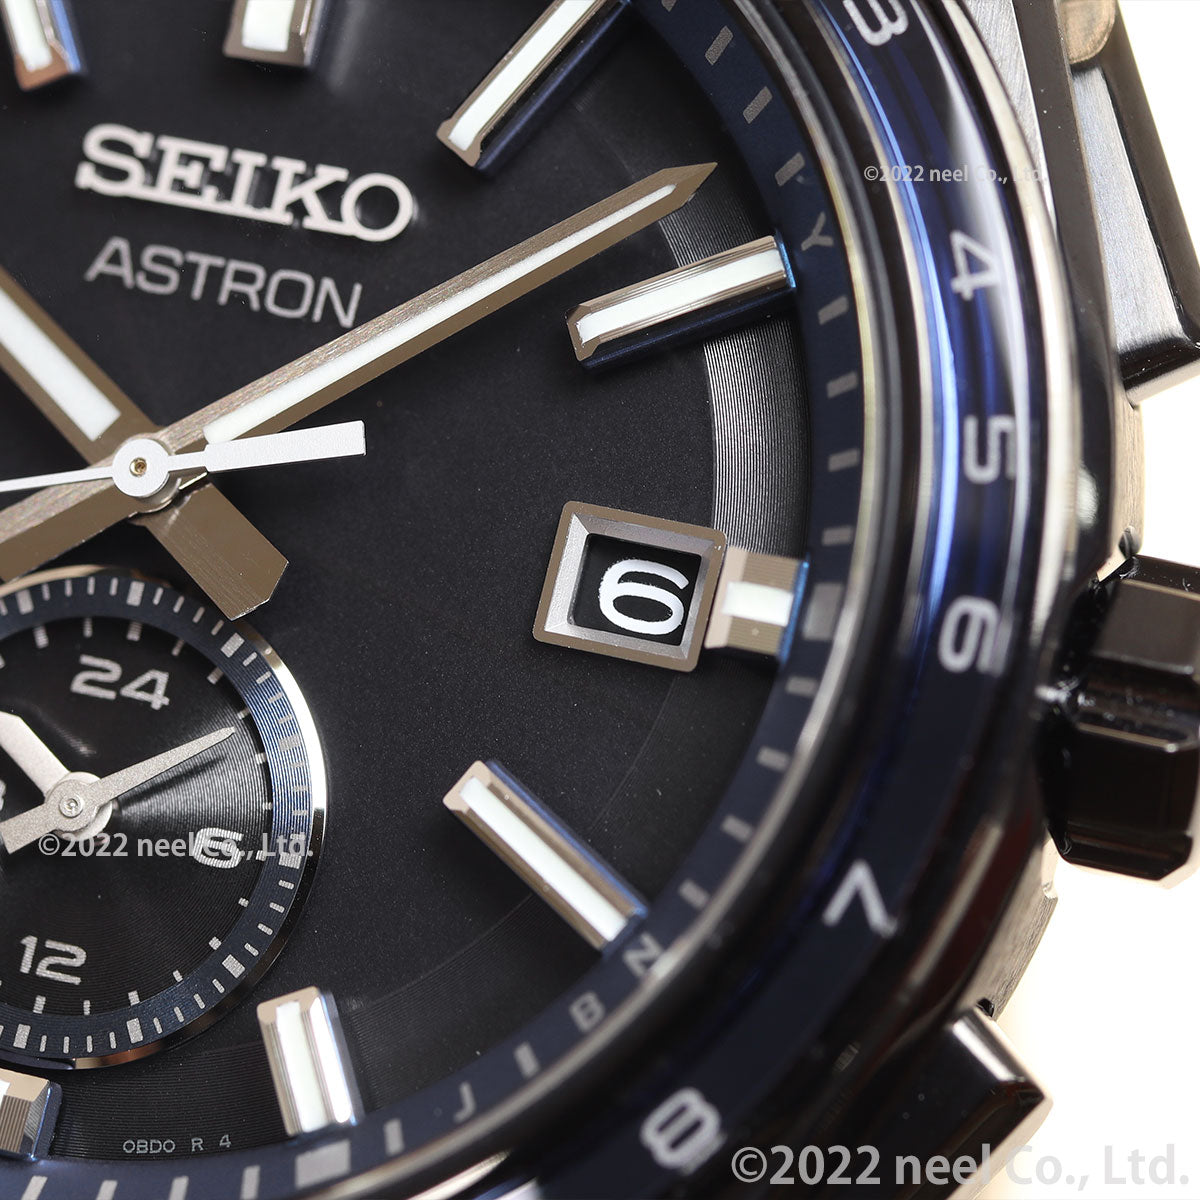 セイコー アストロン ネクスター SEIKO ASTRON ソーラー電波ライン 電波時計 腕時計 メンズ SBXY041 NEXTER